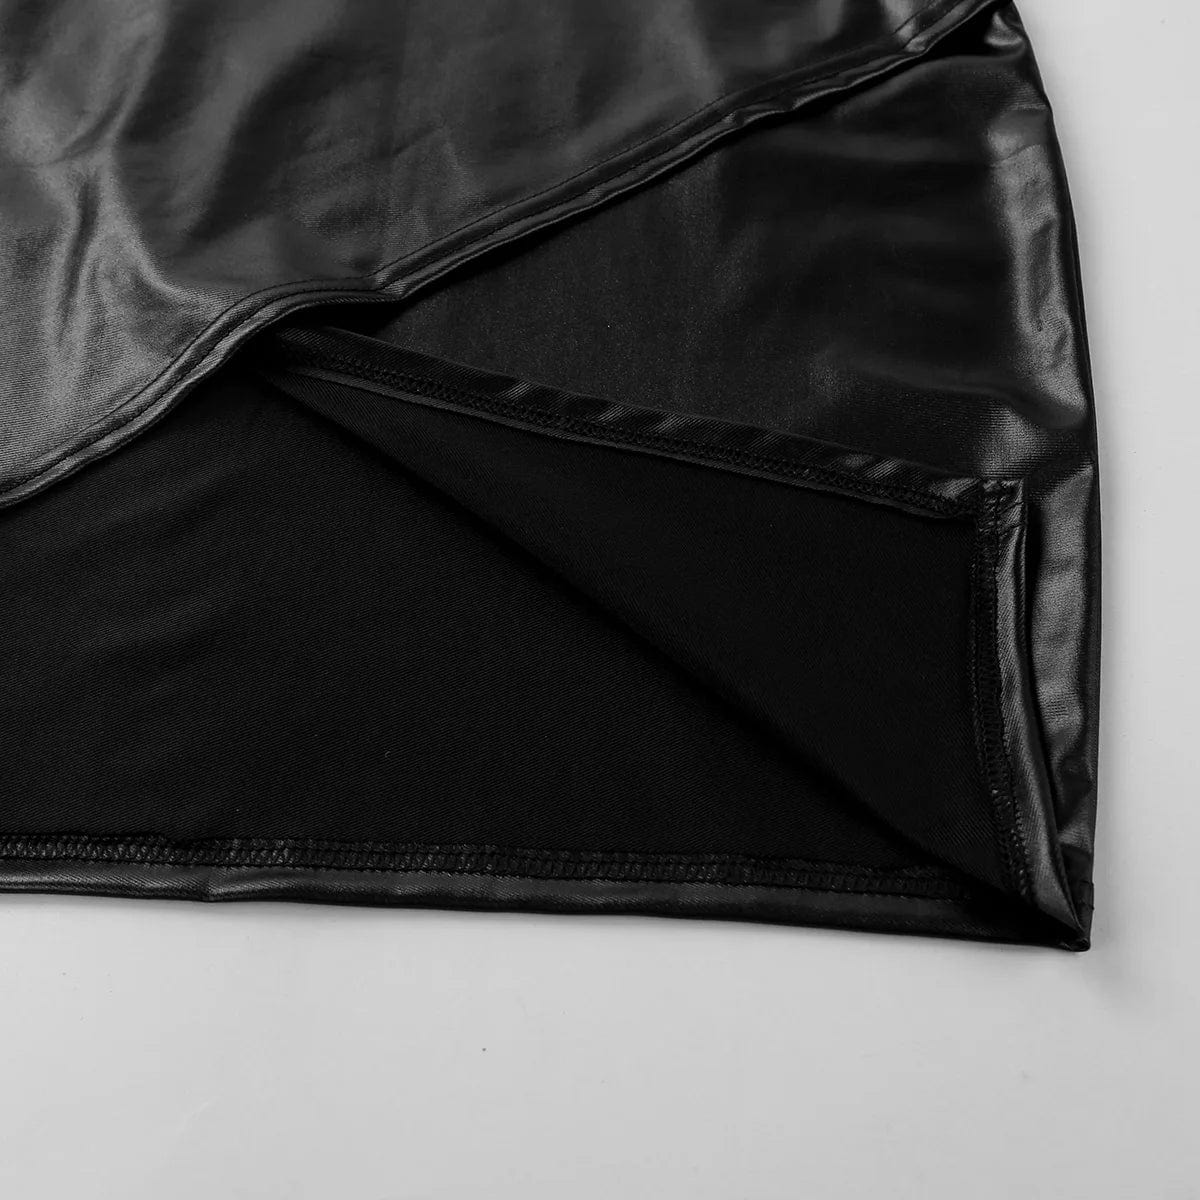 Kinky Cloth Asymmetric Side Slit Bodycon Skirt